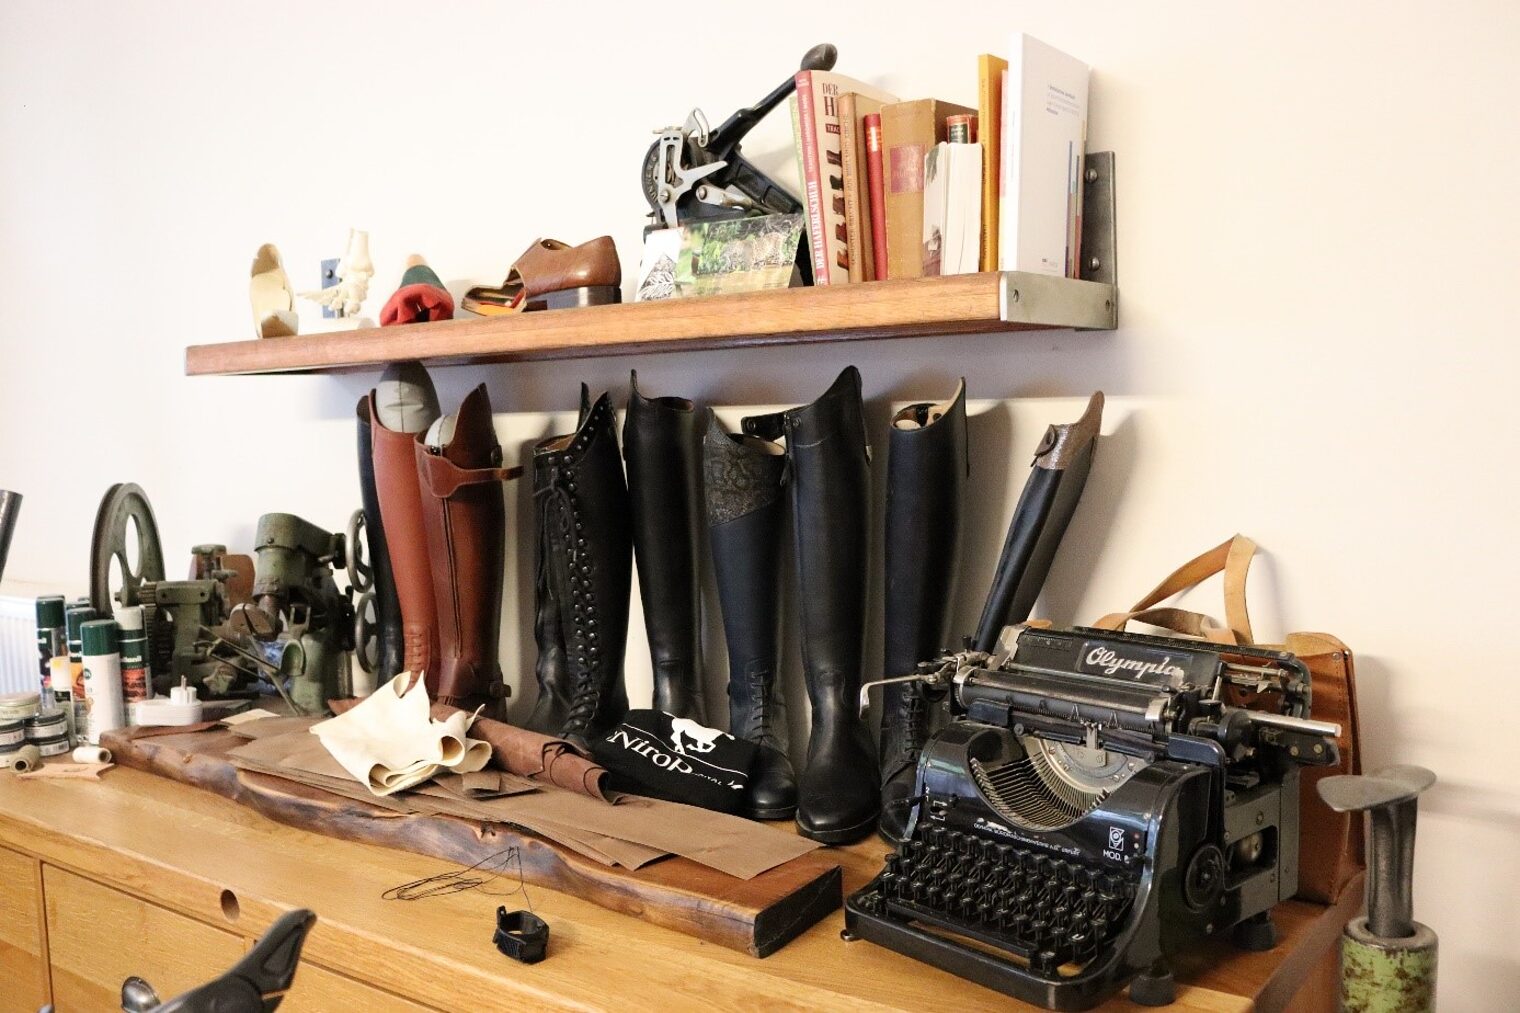 Eindrücke aus einer Werkstatt eines Orthopädieschumachers mit einer Werkbank und Stiefeln sowie einer alten Schreibmaschine